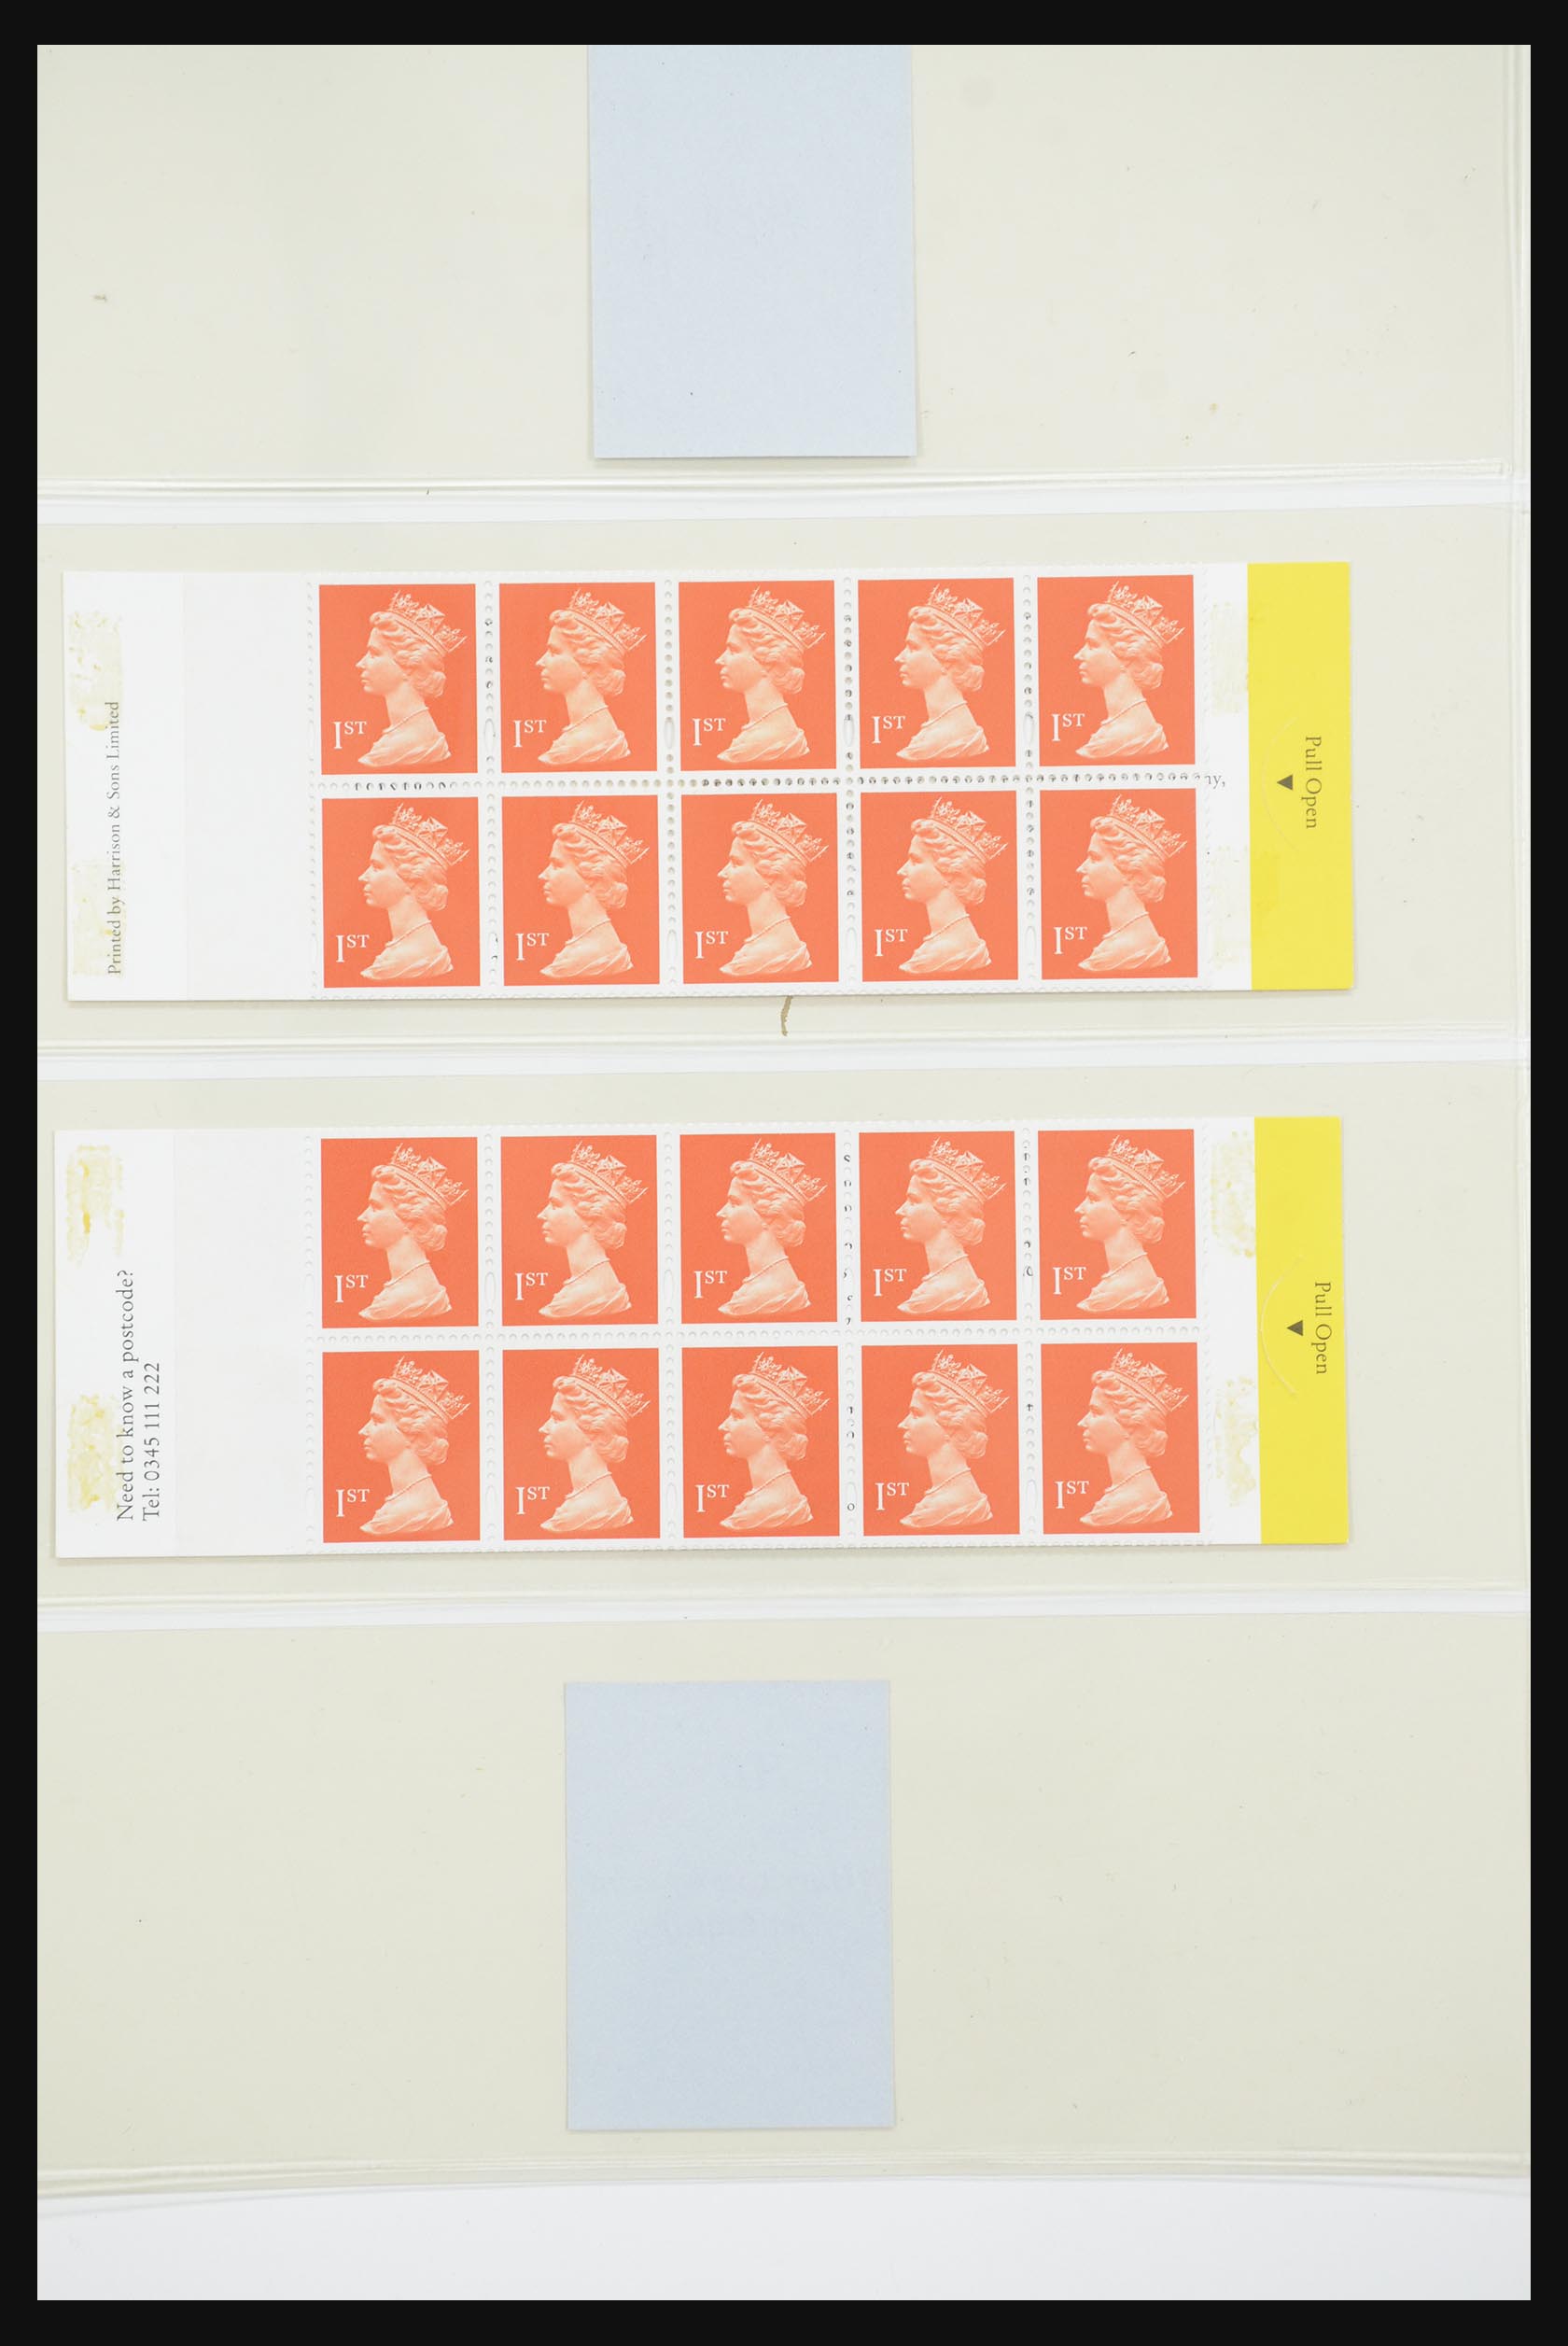 31960 112 - 31960 Engeland postzegelboekjes 1989-2000.